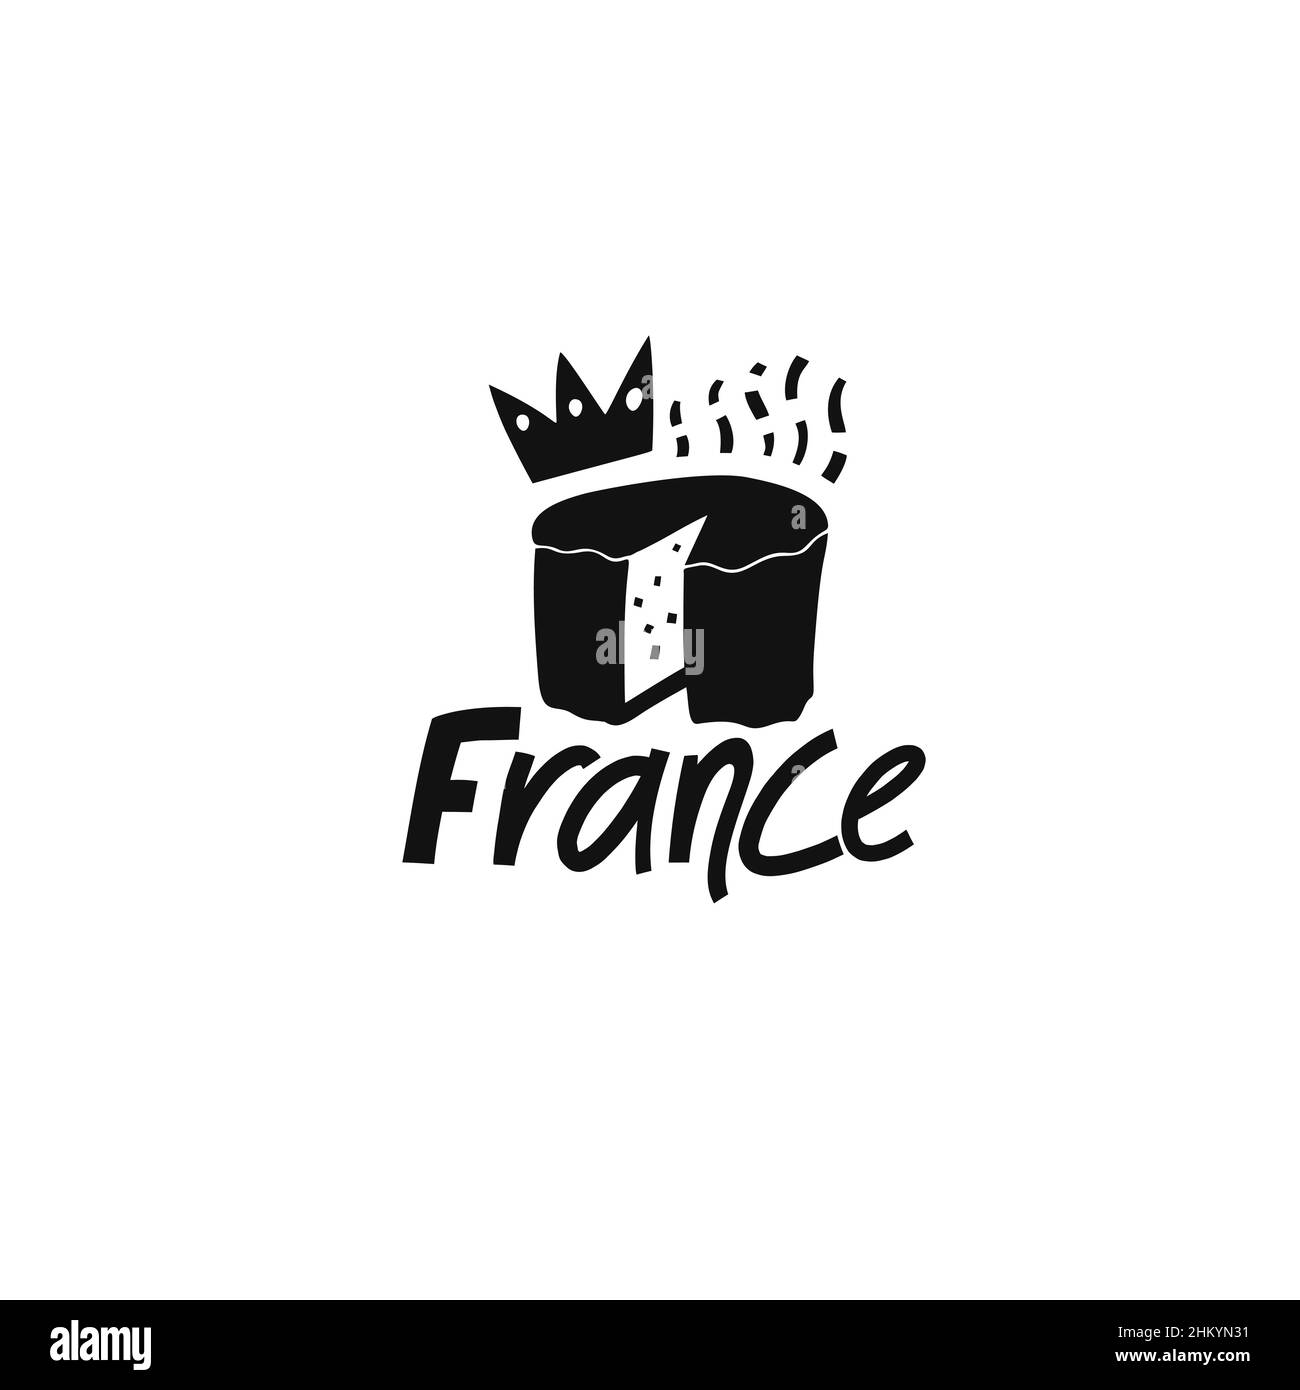 Vektor Handgezeichnetes Symbol von Frankreich. Reisedarstellung der französischen Schilder. Handgezeichnete Schriftzüge. Französisches Wahrzeichen-Logo Stock Vektor